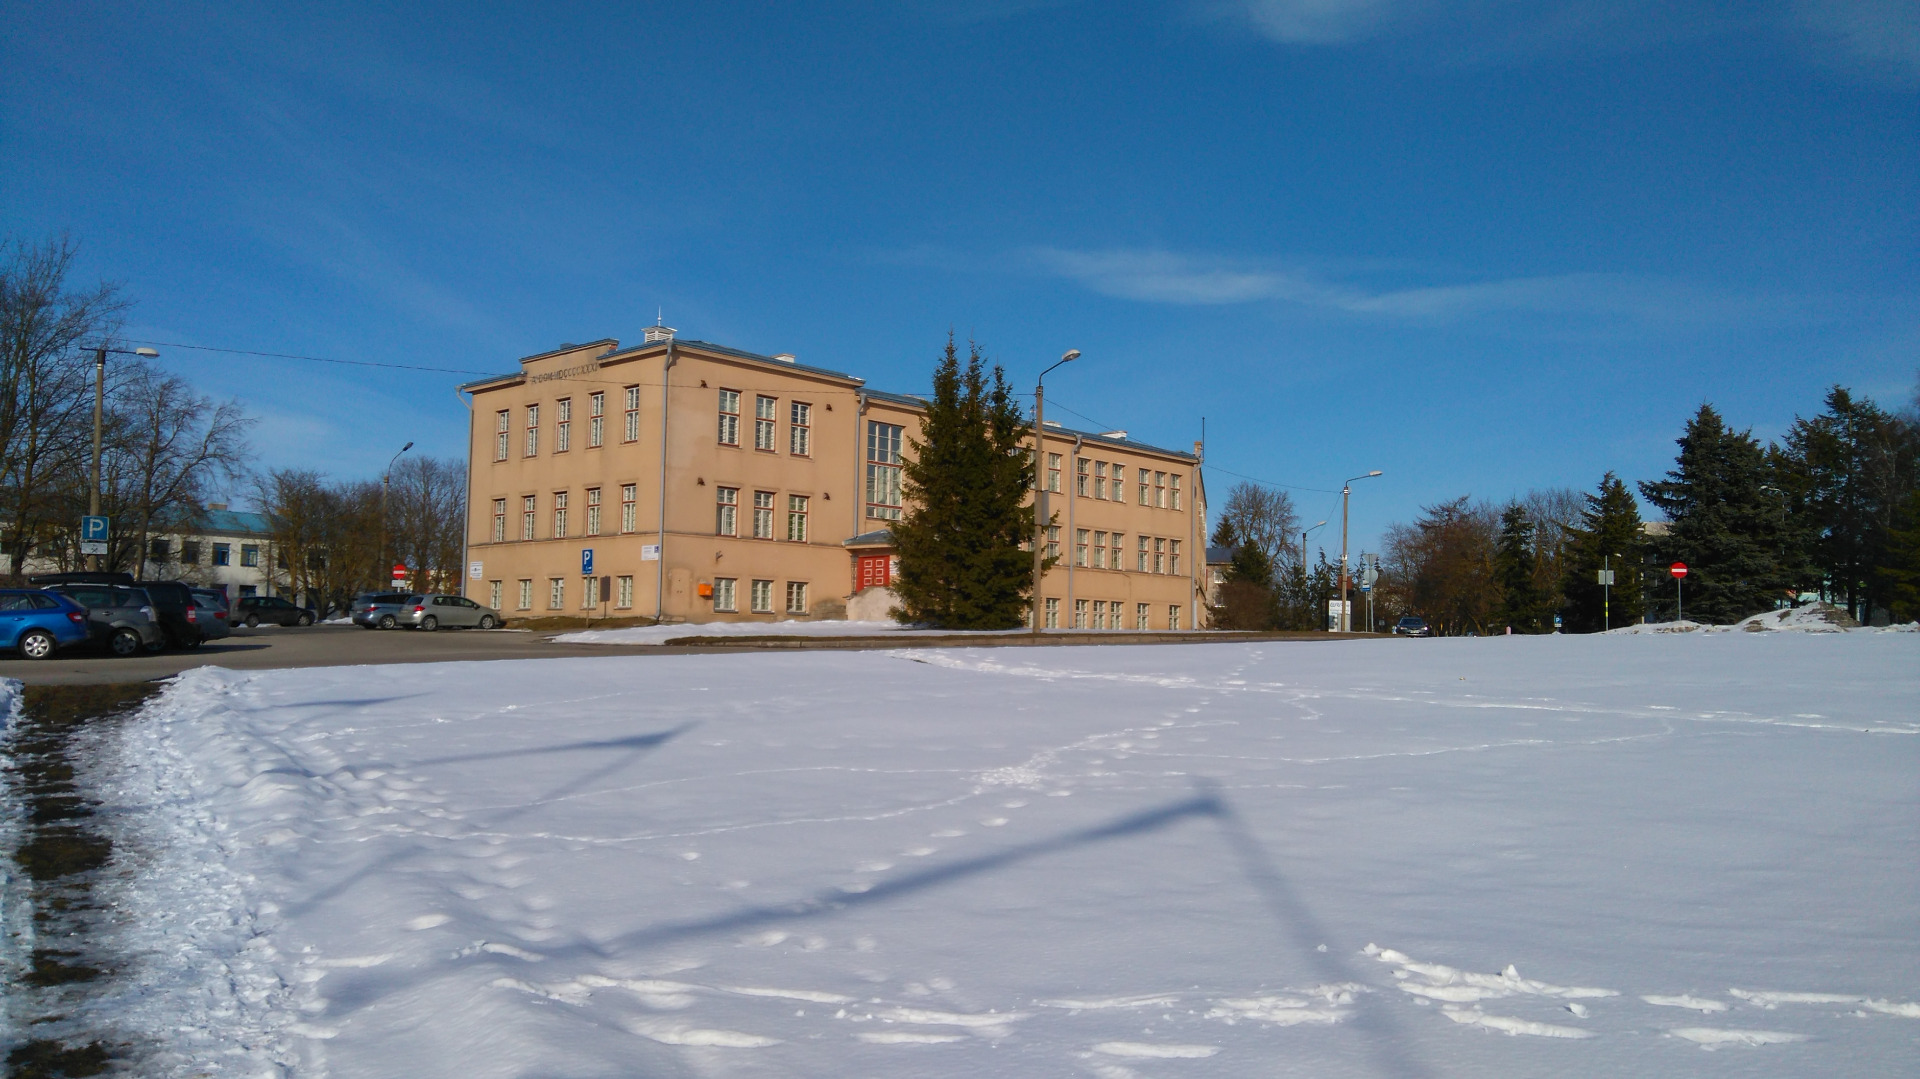 Rakvere saksa koolimaja, vaade hoonele. Arhitekt Ernst Kühnert rephoto